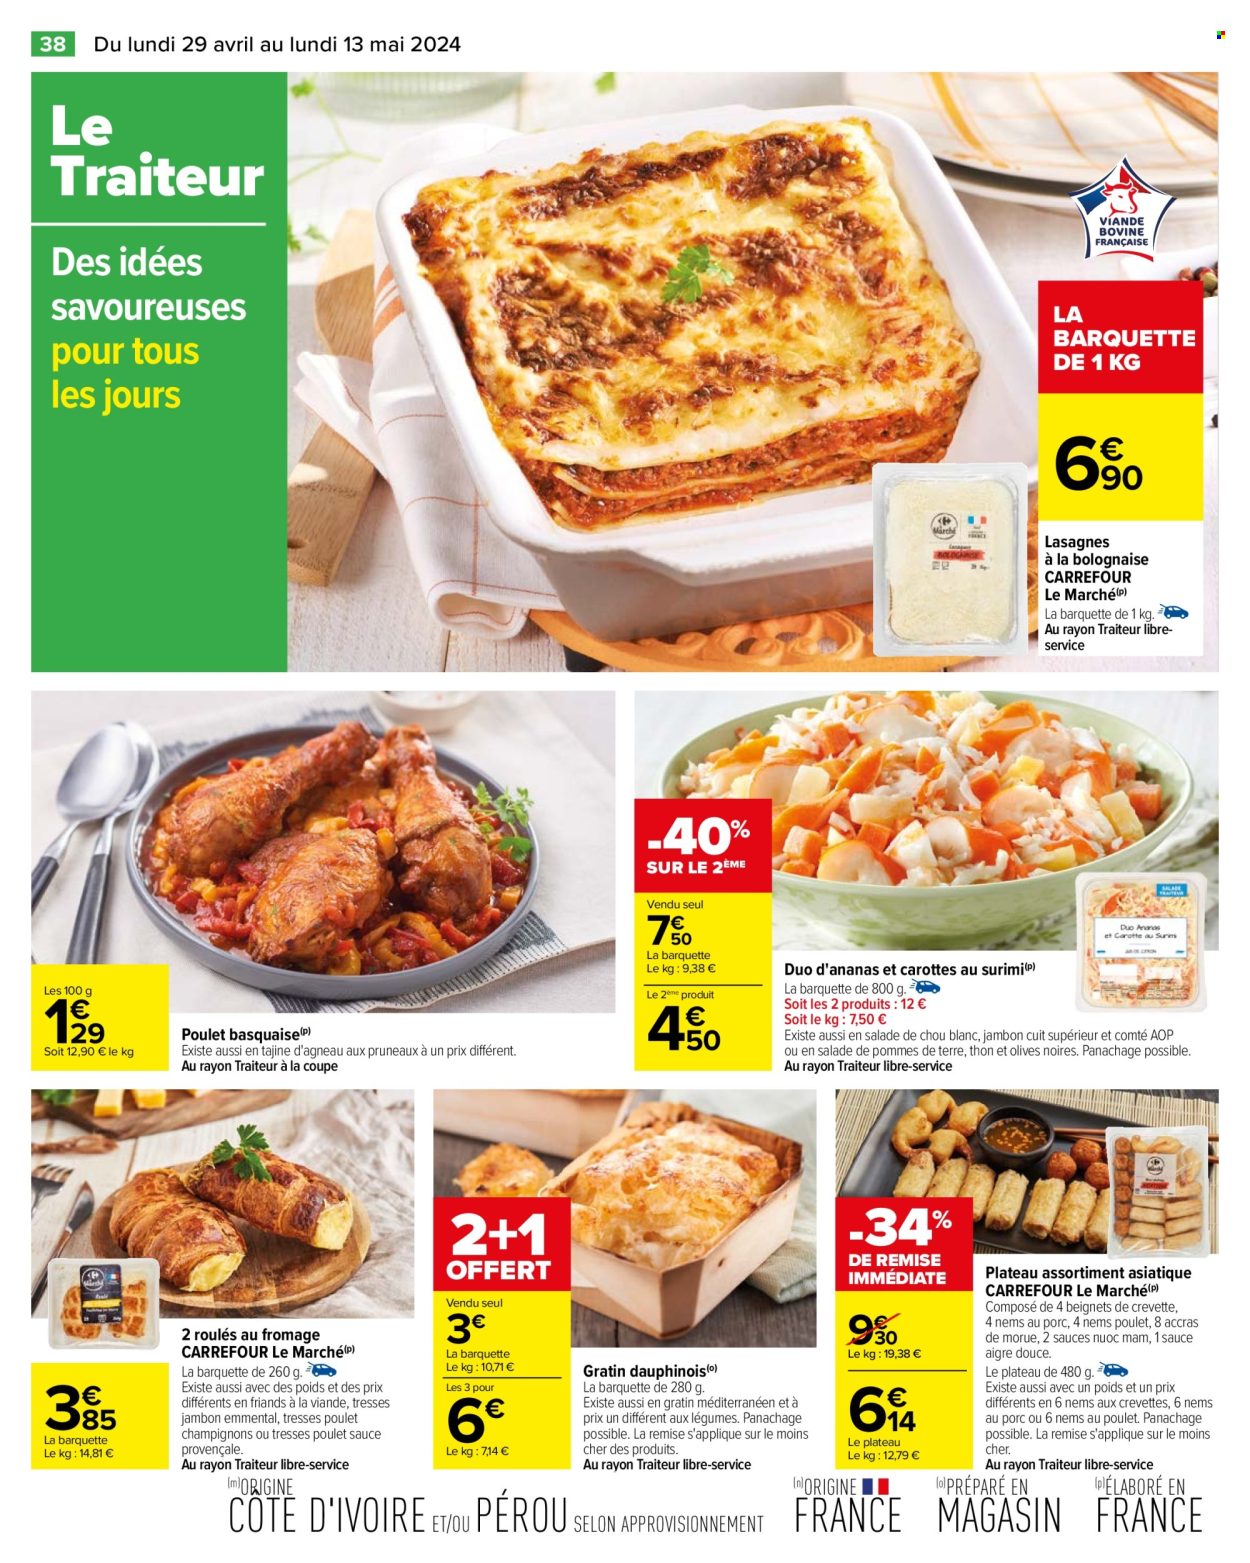 thumbnail - Catalogue Carrefour Hypermarchés - 29/04/2024 - 13/05/2024 - Produits soldés - lasagnes, plat cuisiné, salade, Roulés Au Fromage, gratins de pommes, plateau assortiment asiatique. Page 42.